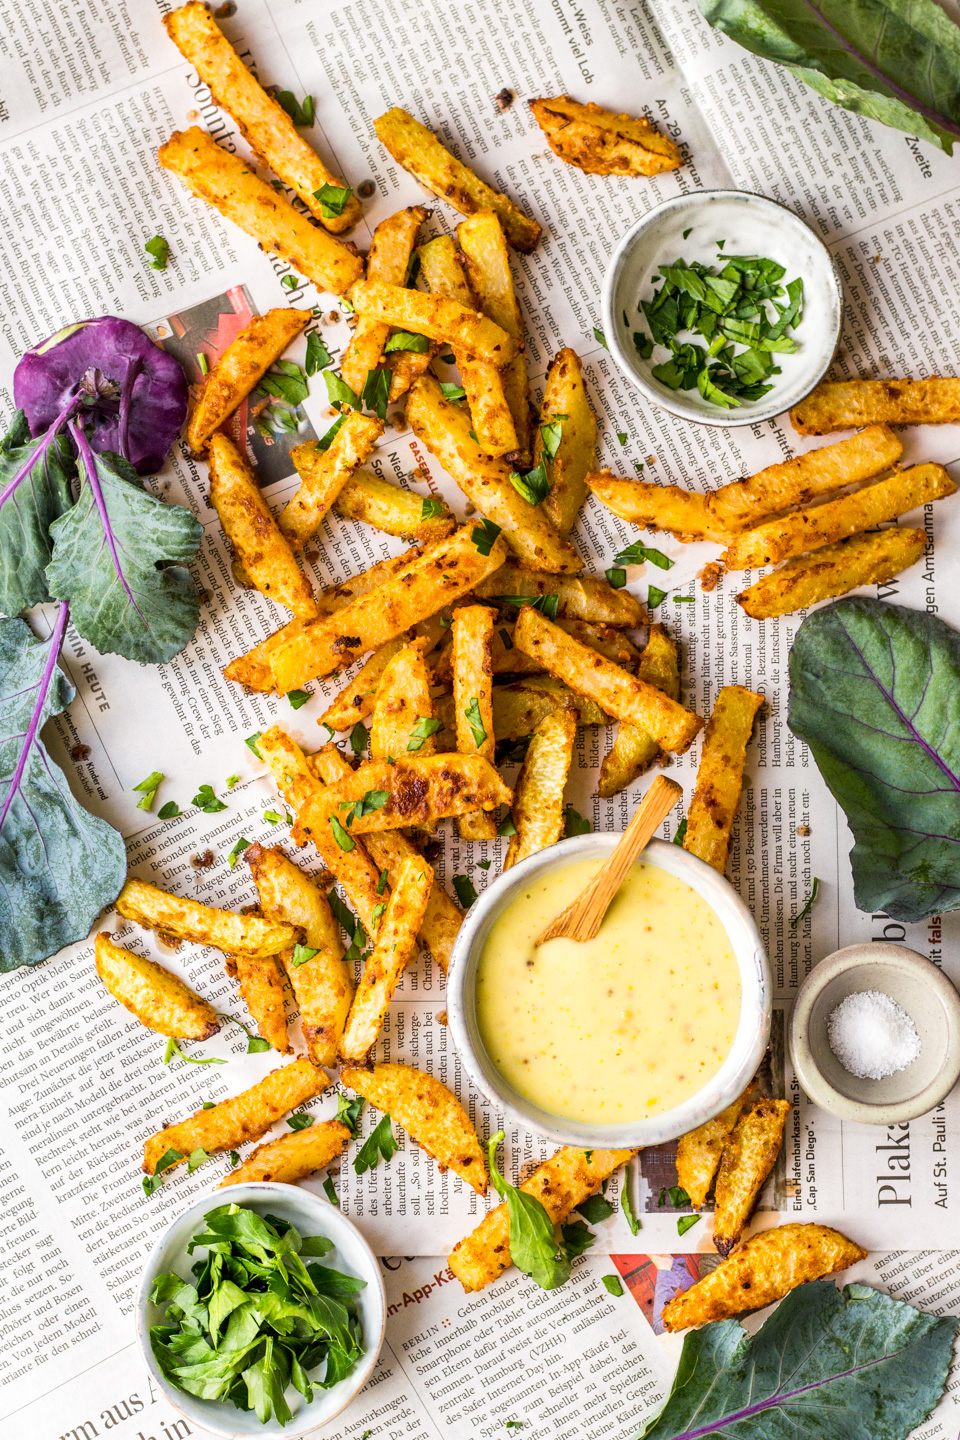 Healthy fries - Heavenlynn kohlrabi 20-minute